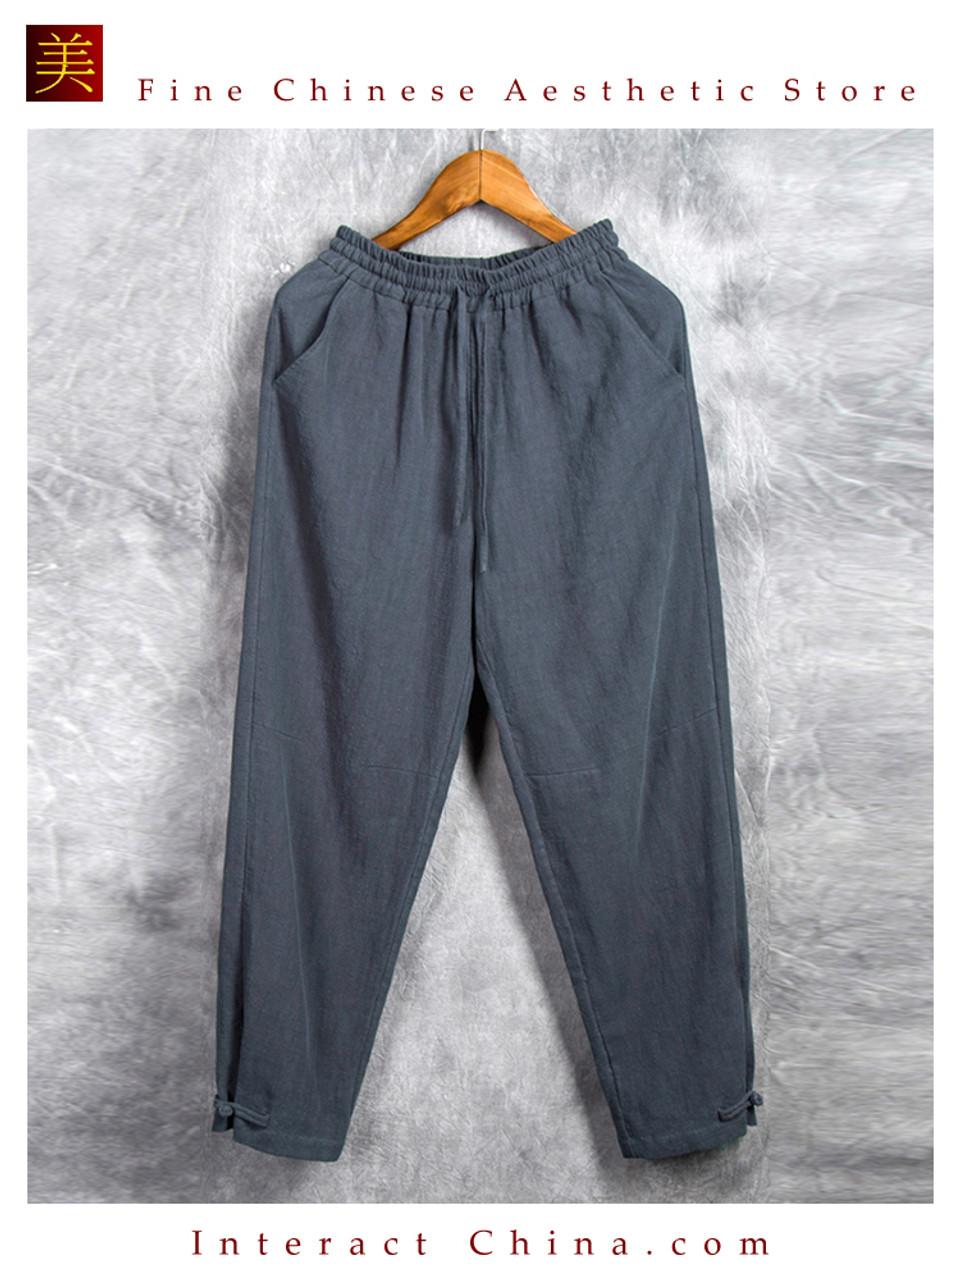 Comfy Drawstring Linen Pants Long with Band Waist (Natural)